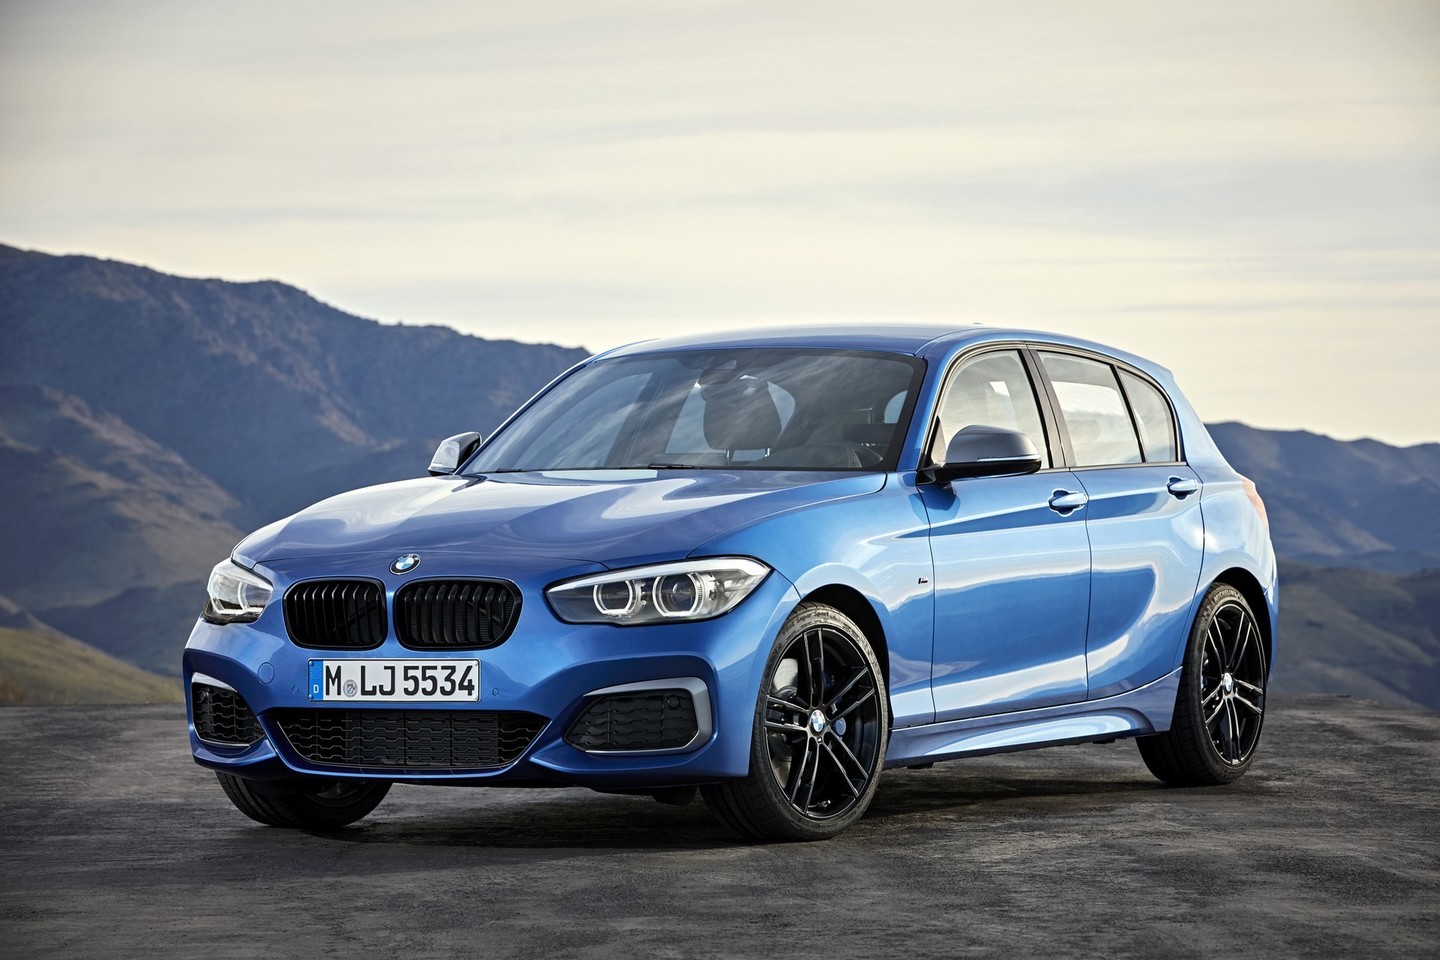 Antros kartos 1 serijos BMW pagaliau sulaukė atnaujinimo. <br>Gamintojo nuotr.